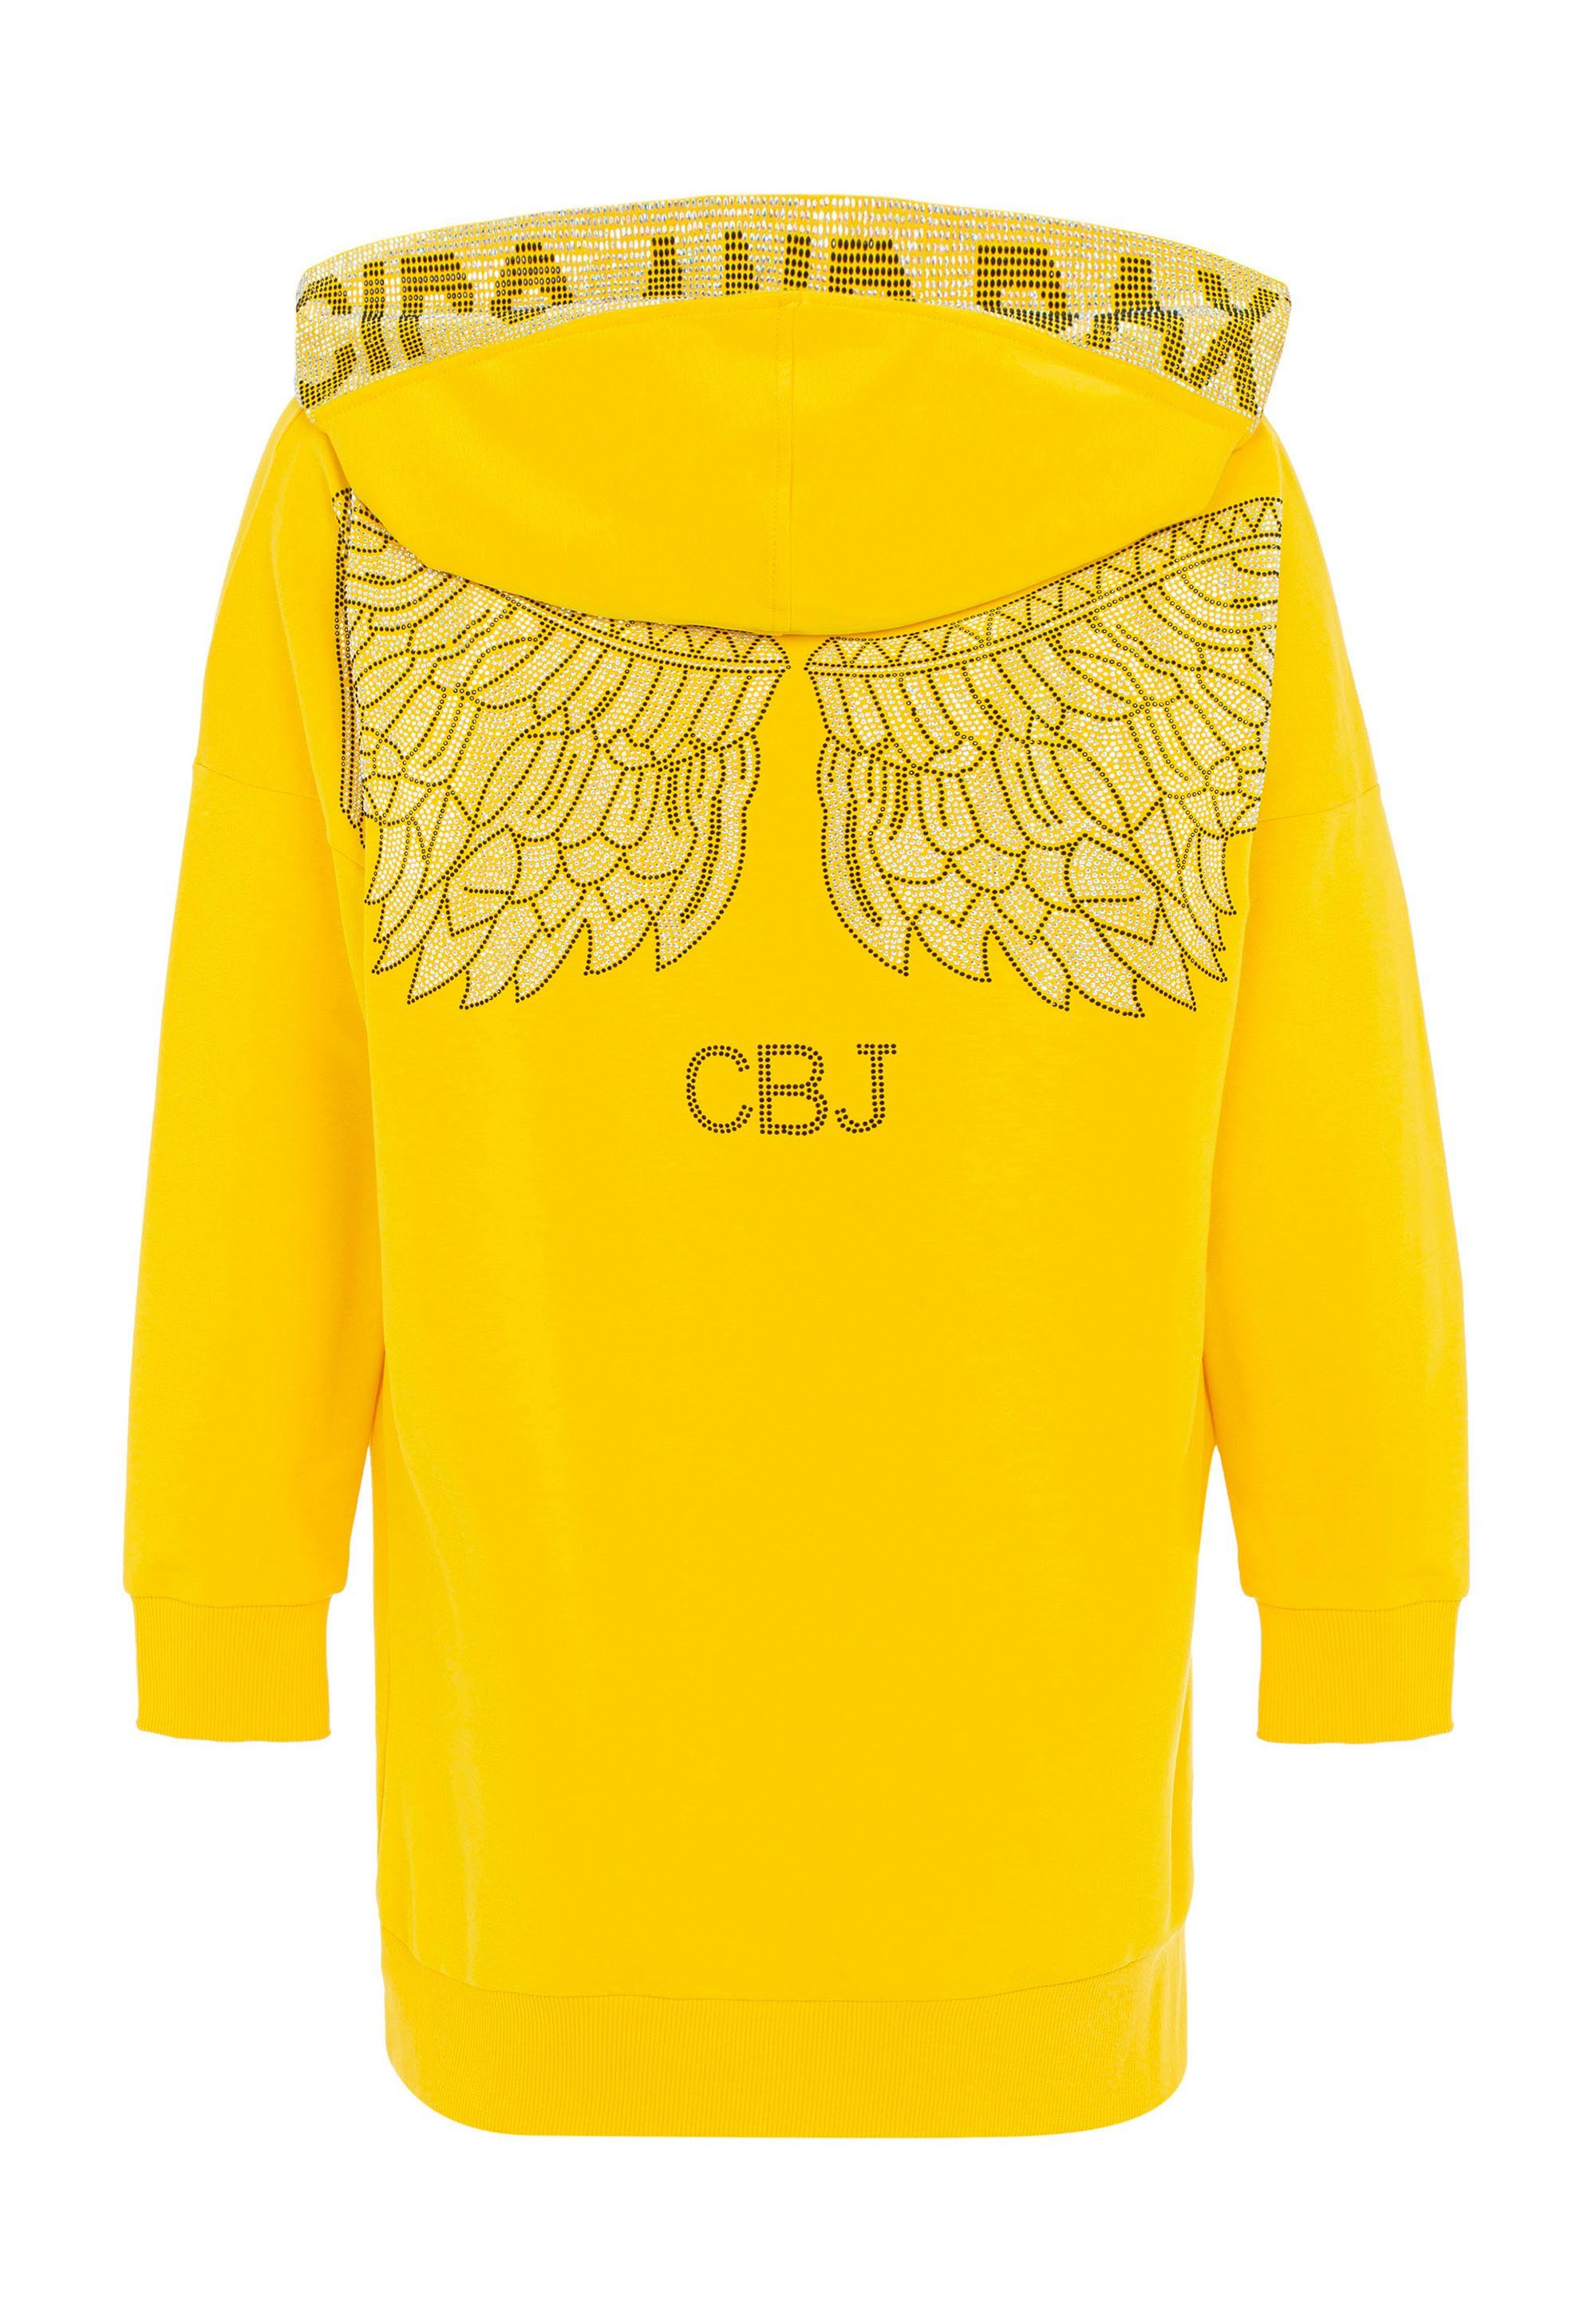 Cipo & Baxx Jerseykleid aufwendigem Strass-Design mit gelb